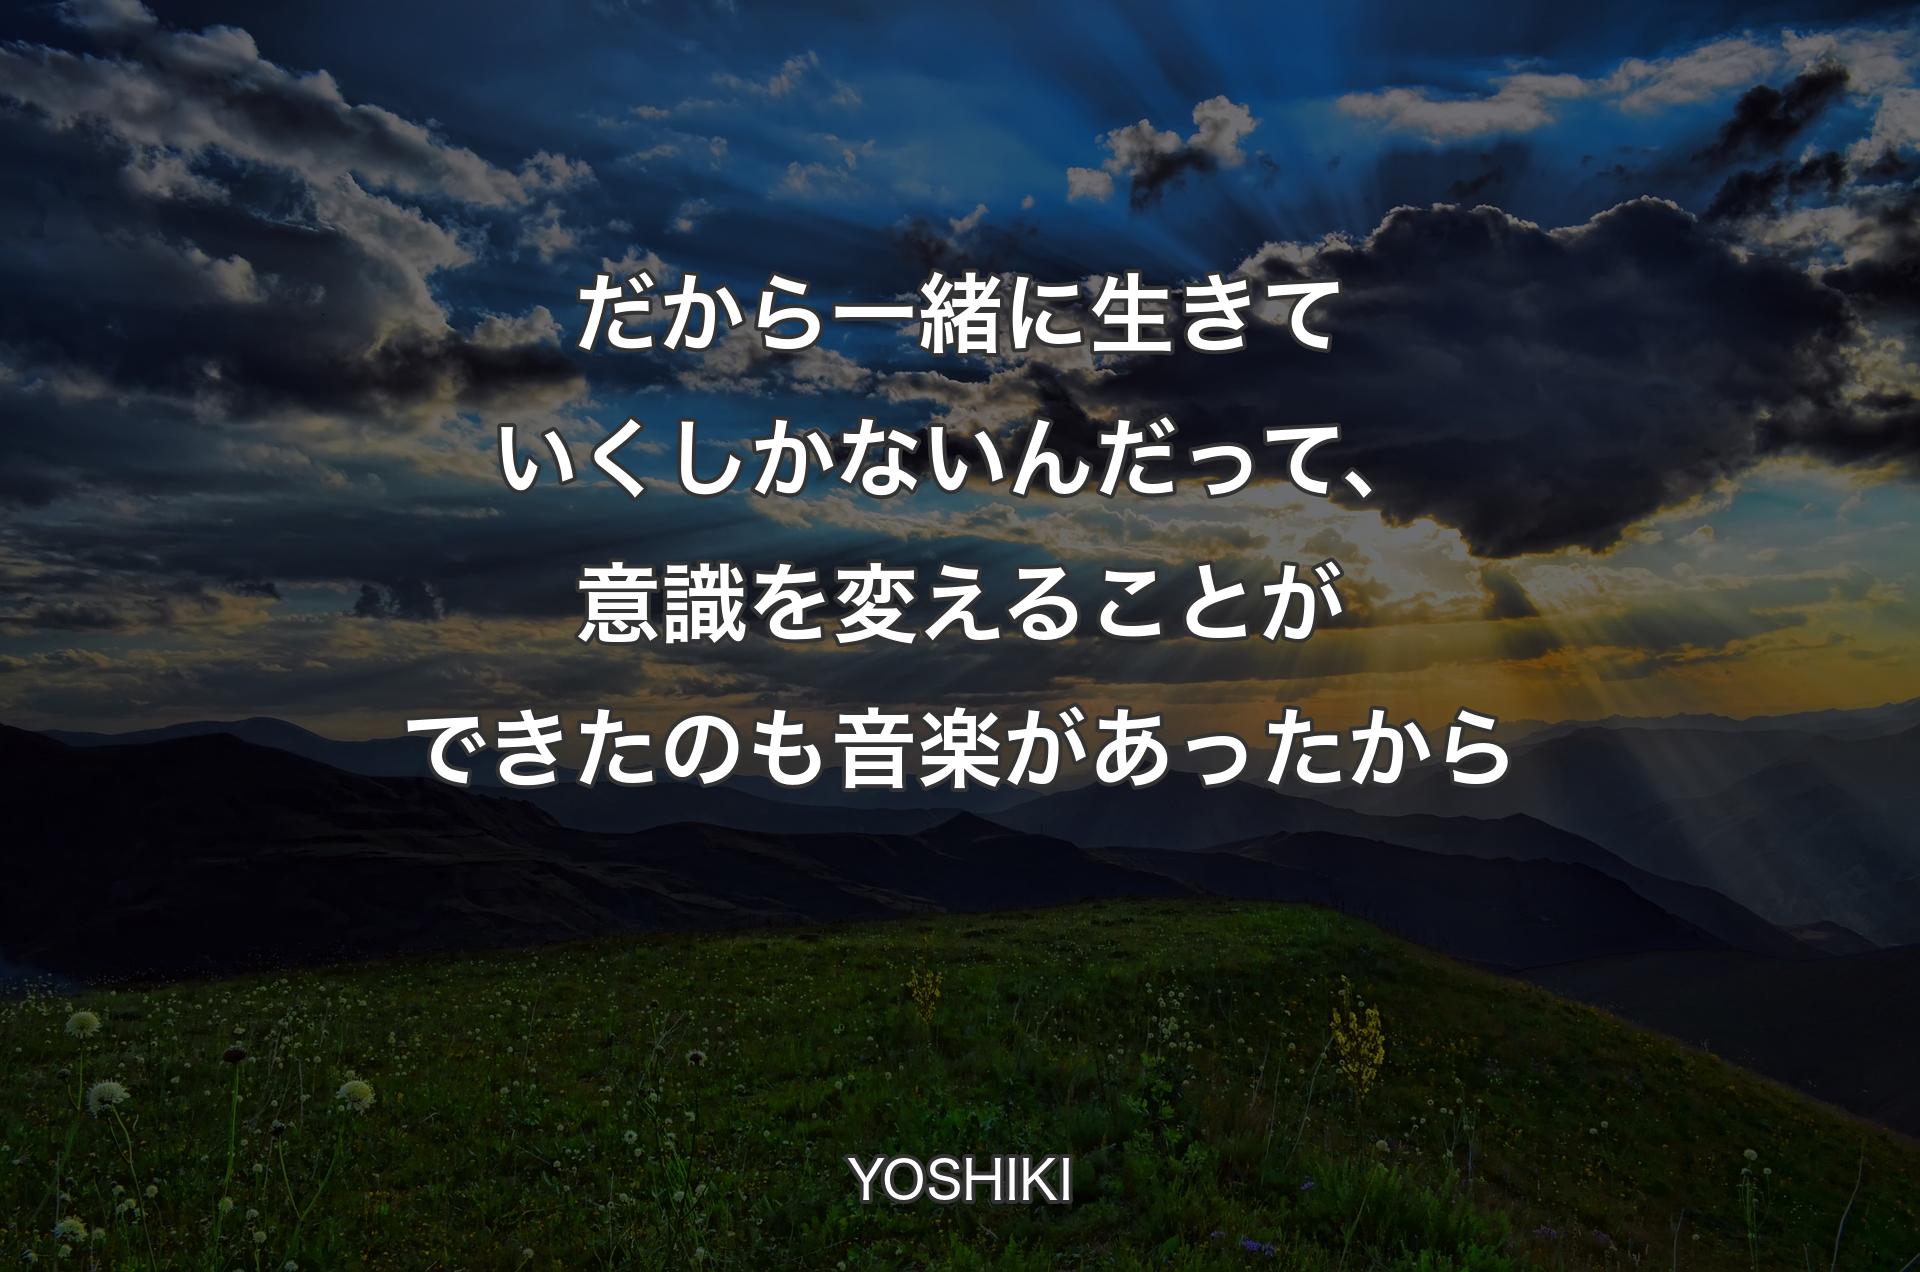 だから一緒に生きていくしかないんだって、意識を変えることができたのも音楽があったから - YOSHIKI